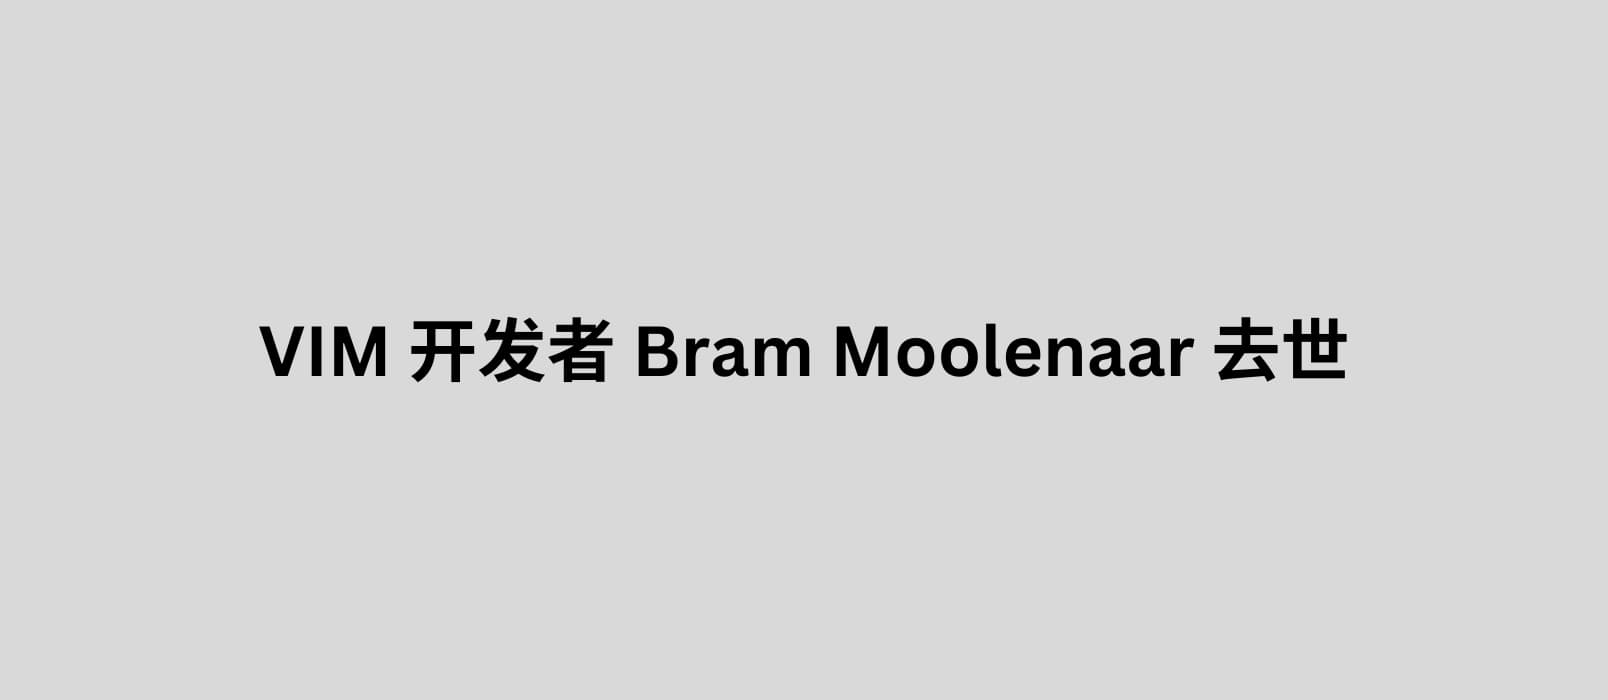 有着 31 年历史的著名文本编辑器 VIM 开发者 Bram Moolenaar 去世